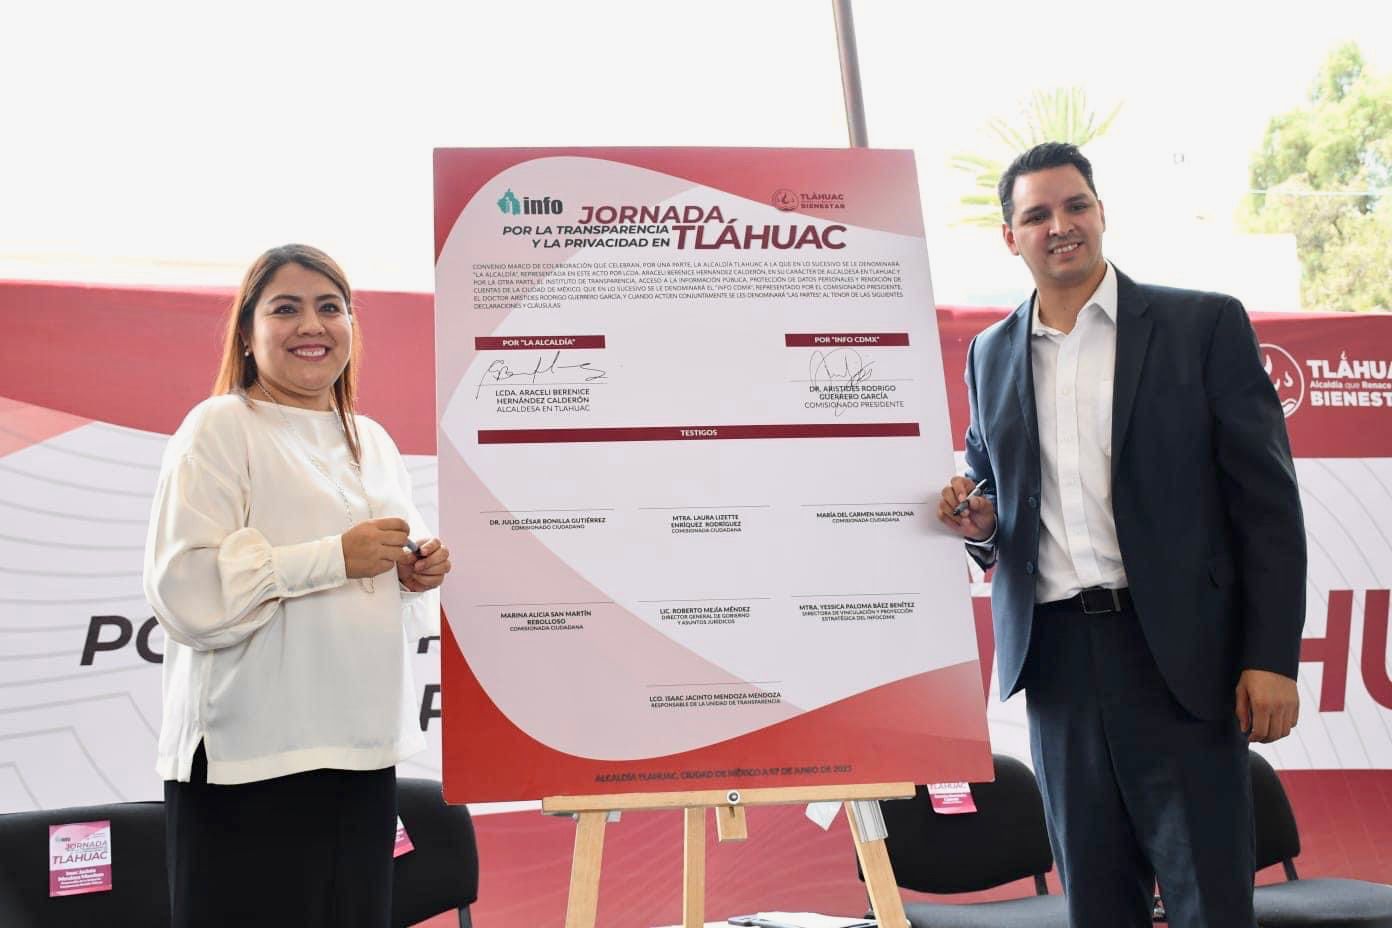 Tláhuac realiza Feria de la Transparencia